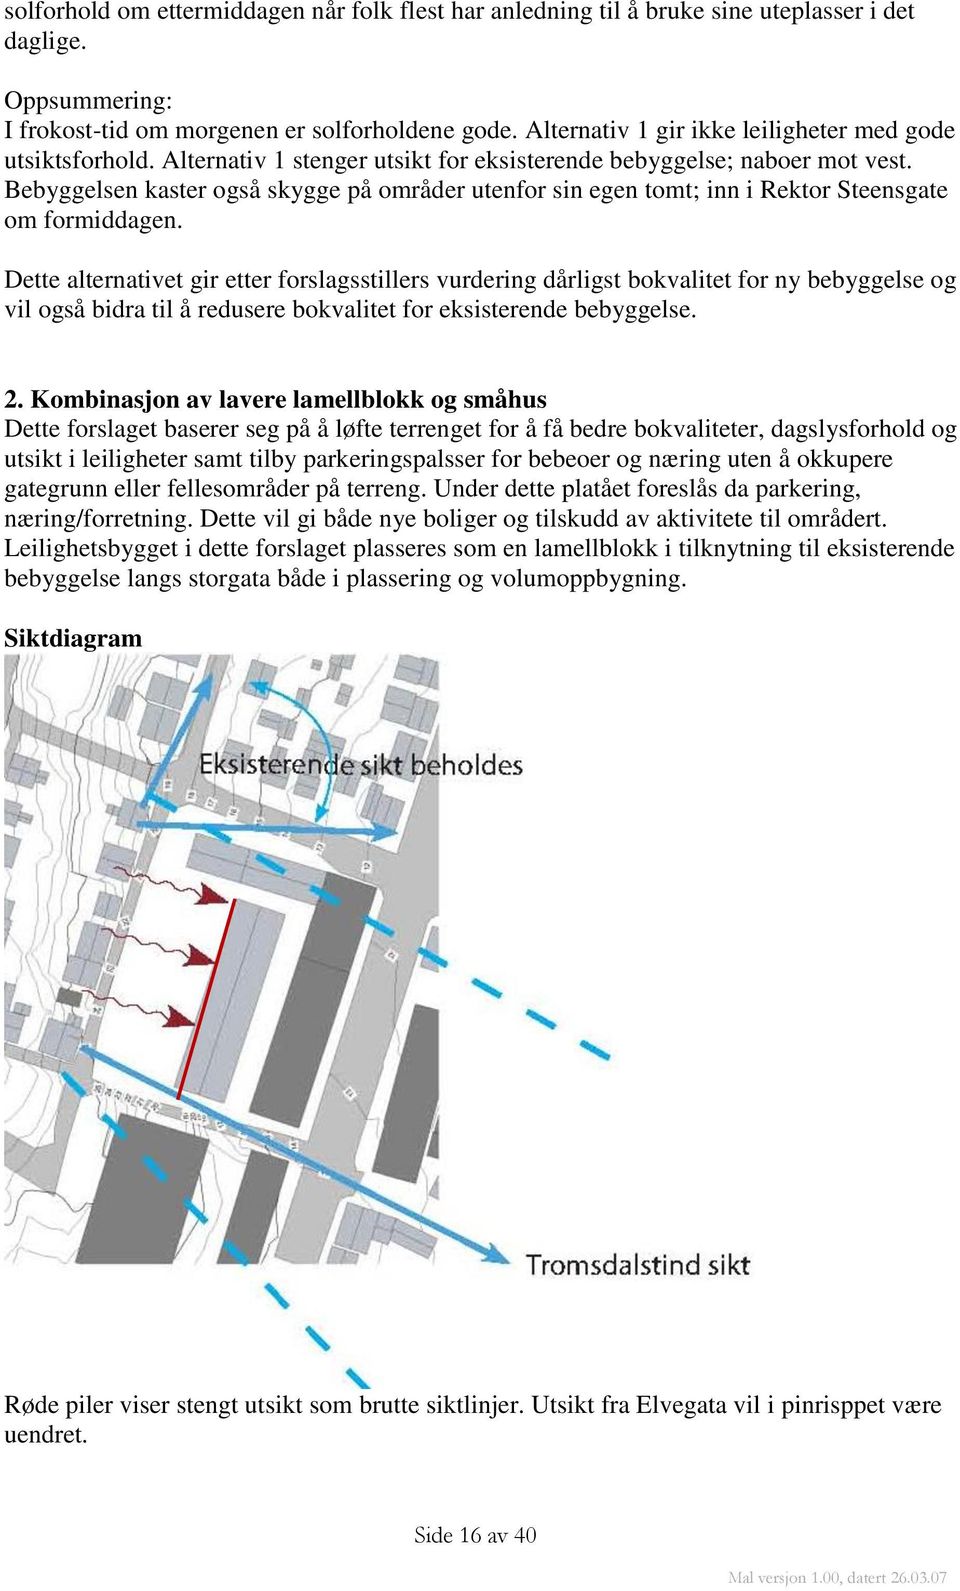 Bebyggelsen kaster også skygge på områder utenfor sin egen tomt; inn i Rektor Steensgate om formiddagen.